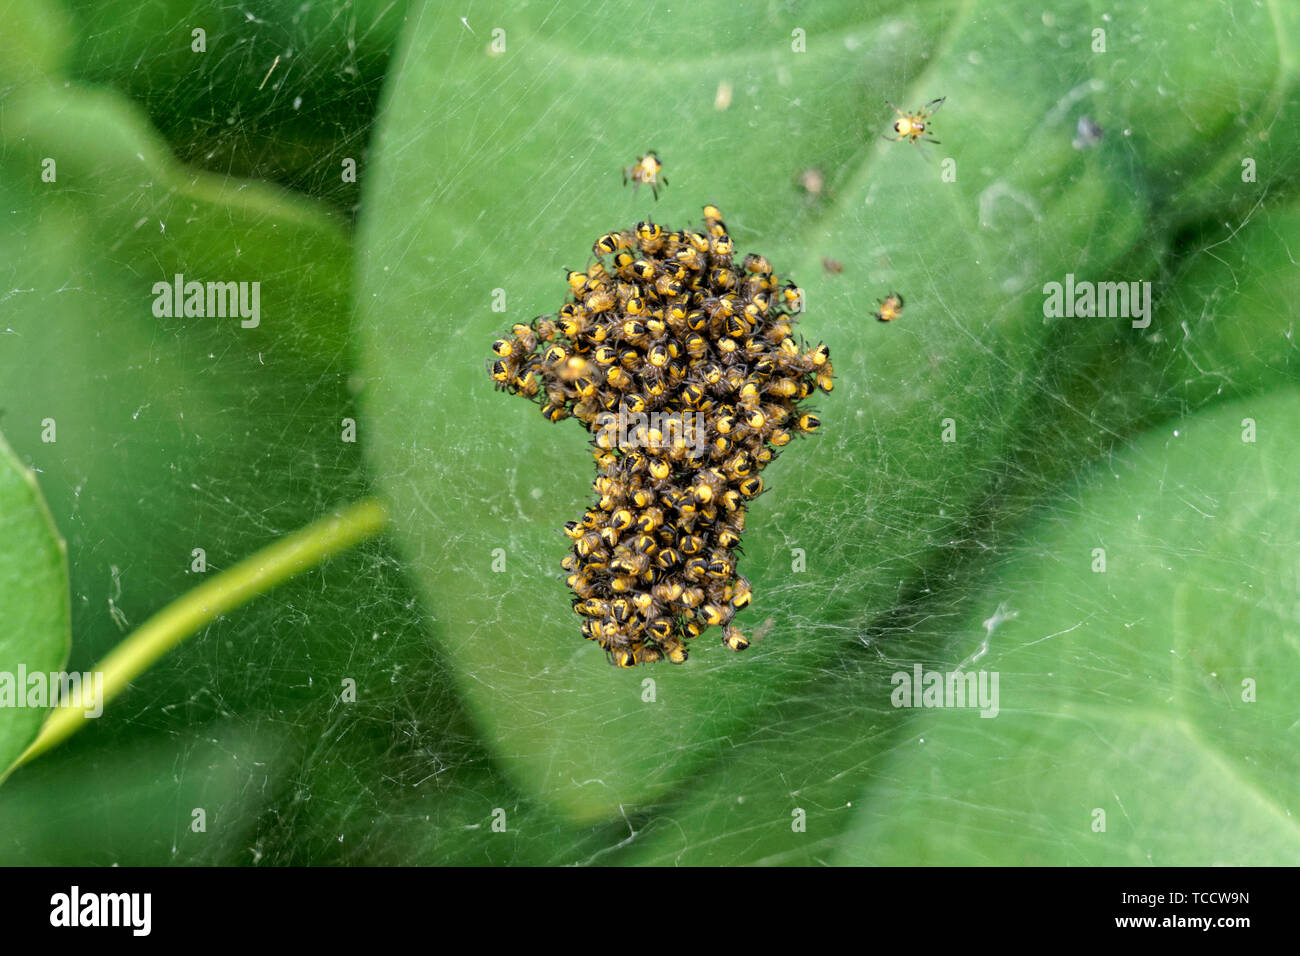 Makroaufnahme von Baby-europäischen Gartenspinnen in einem Baumschulballnetz, Vancouver, BC, Kanada Stockfoto